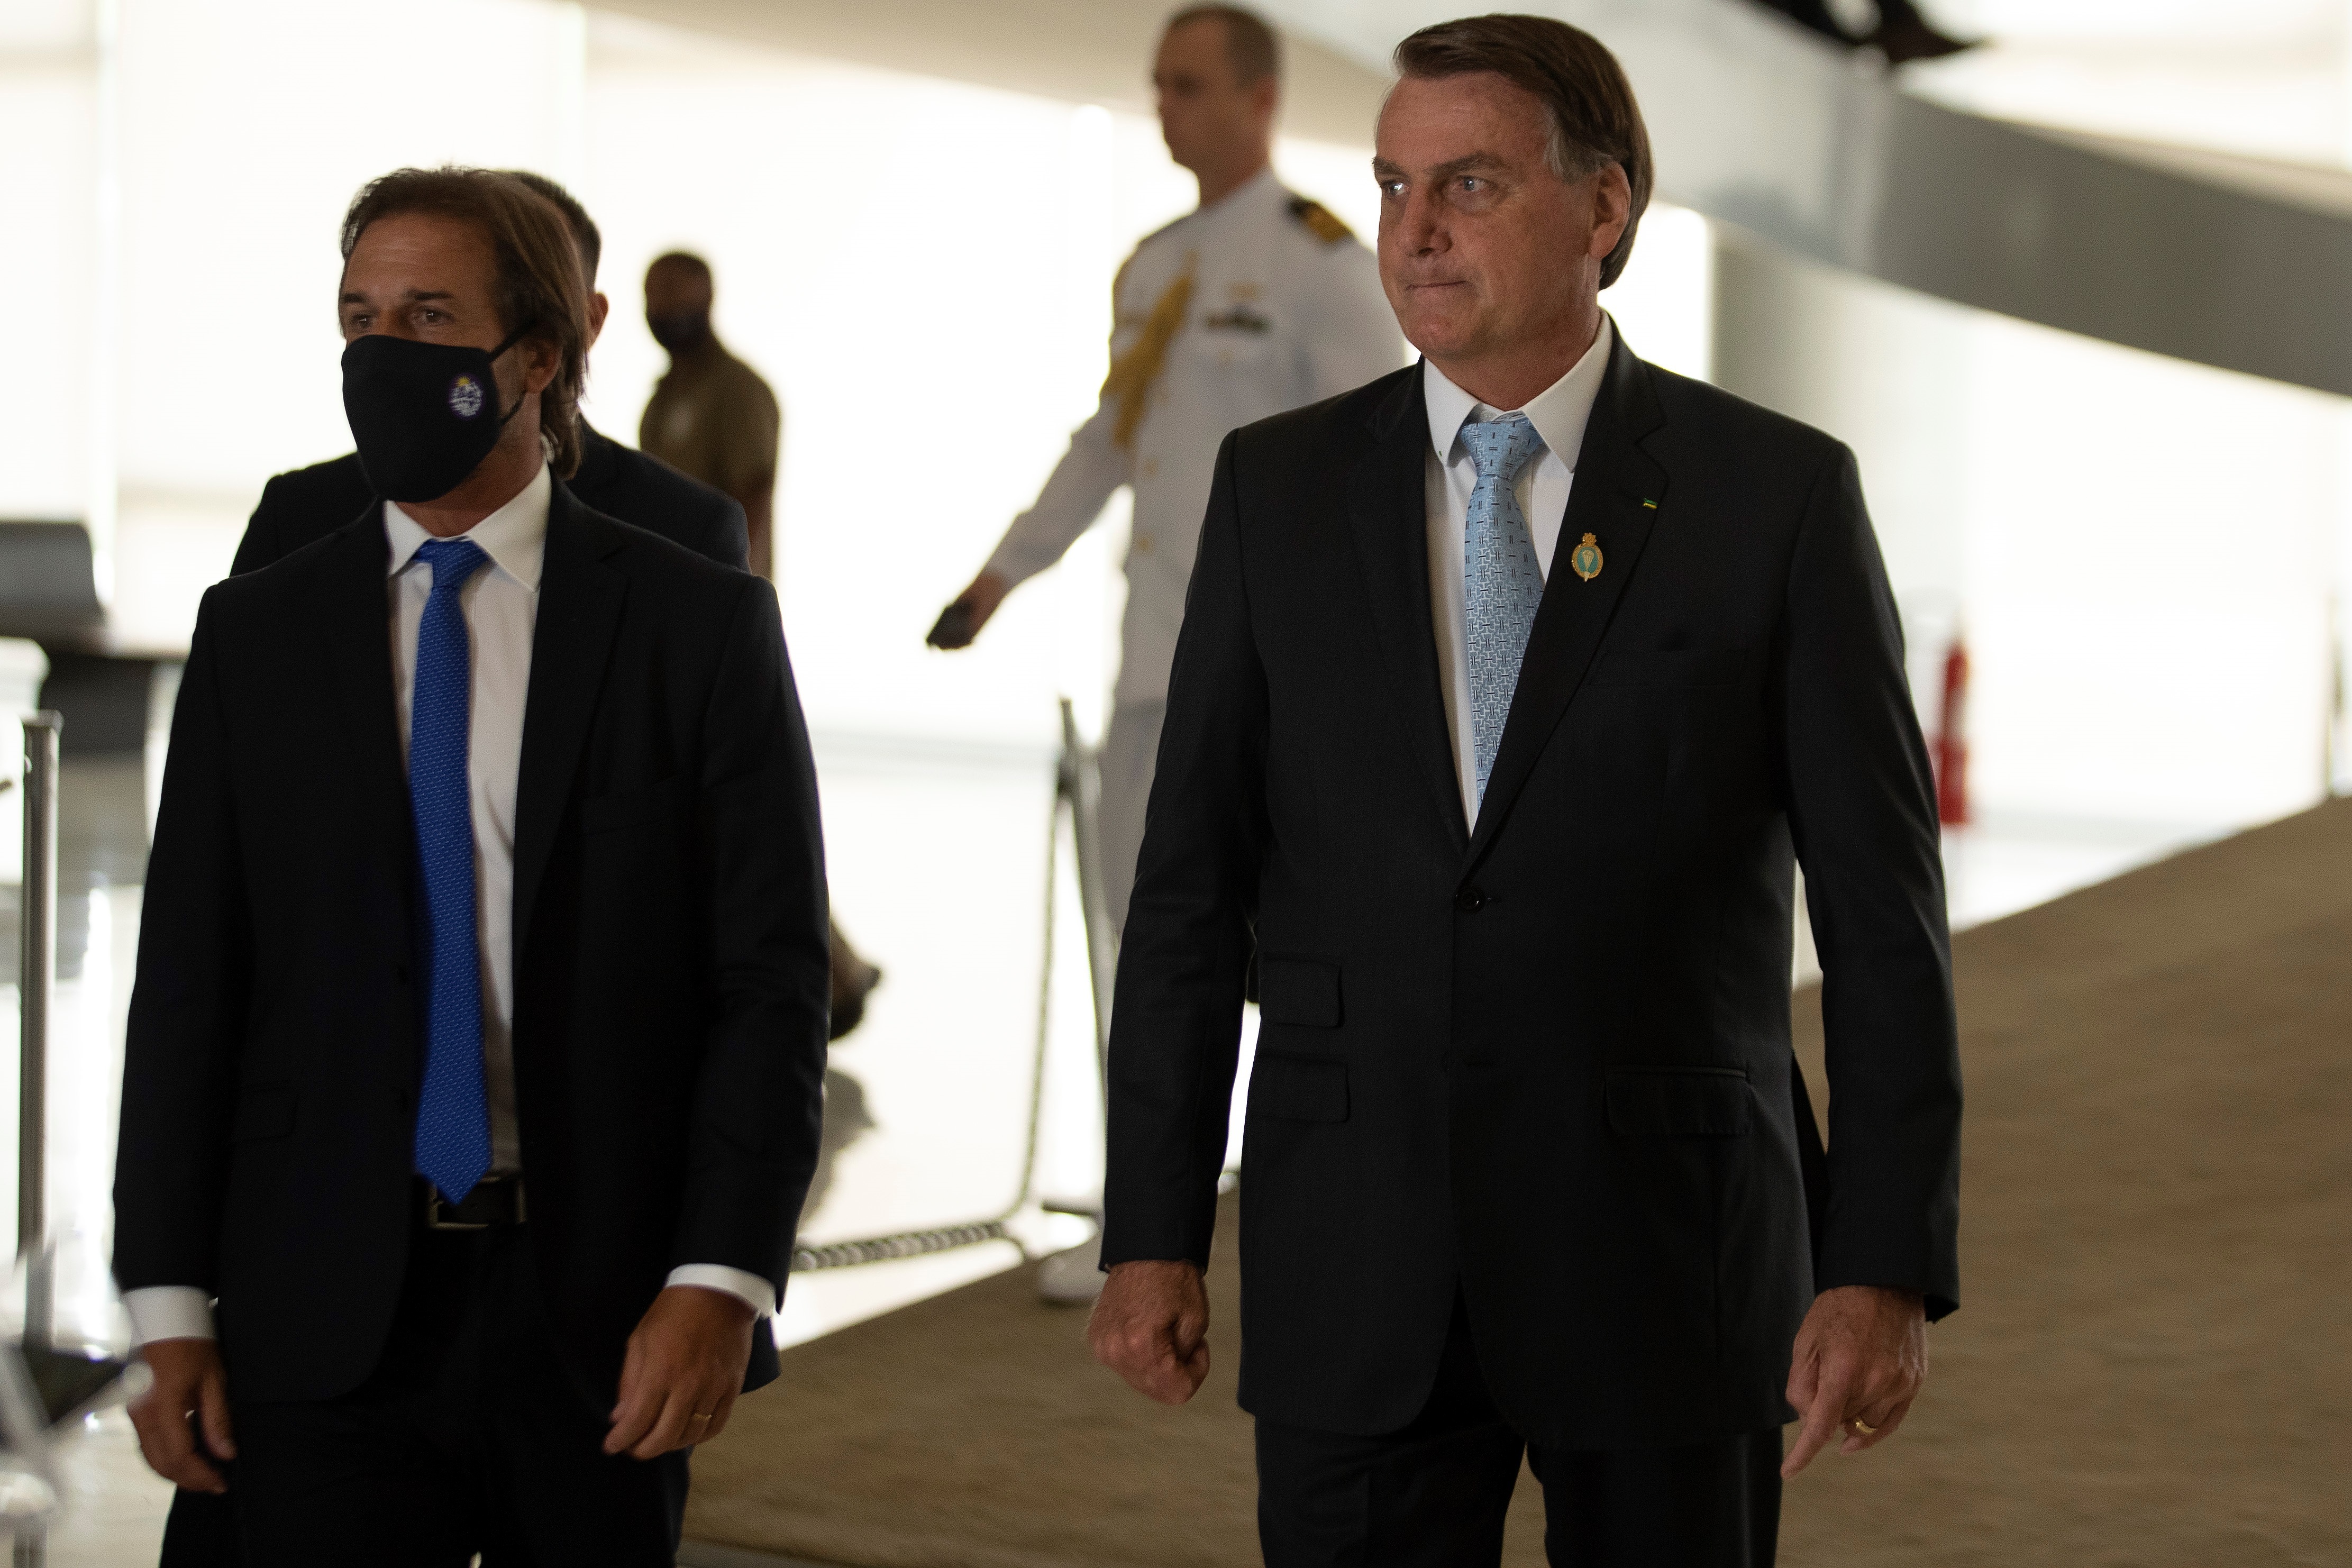 El presidente de Brasil, Jair Bolsonaro, y el presidente de Uruguay, Luis Lacalle Pou, se diferenciaron del gobierno argentino respeto a la postura internacional por los hechos violentos ocurridos en Cuba (EFE/ Joedson Alves)
